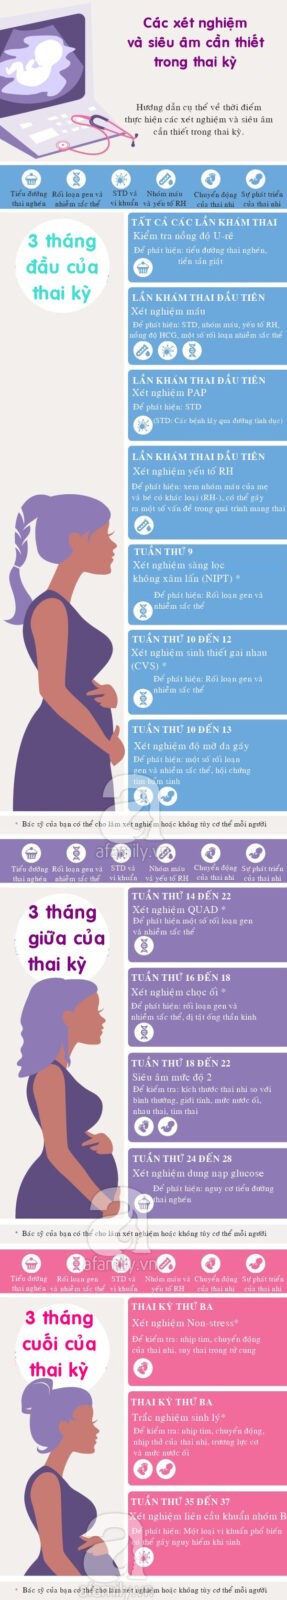 Các xét nghiệm mẹ bầu không nên bỏ qua trong thai kỳ